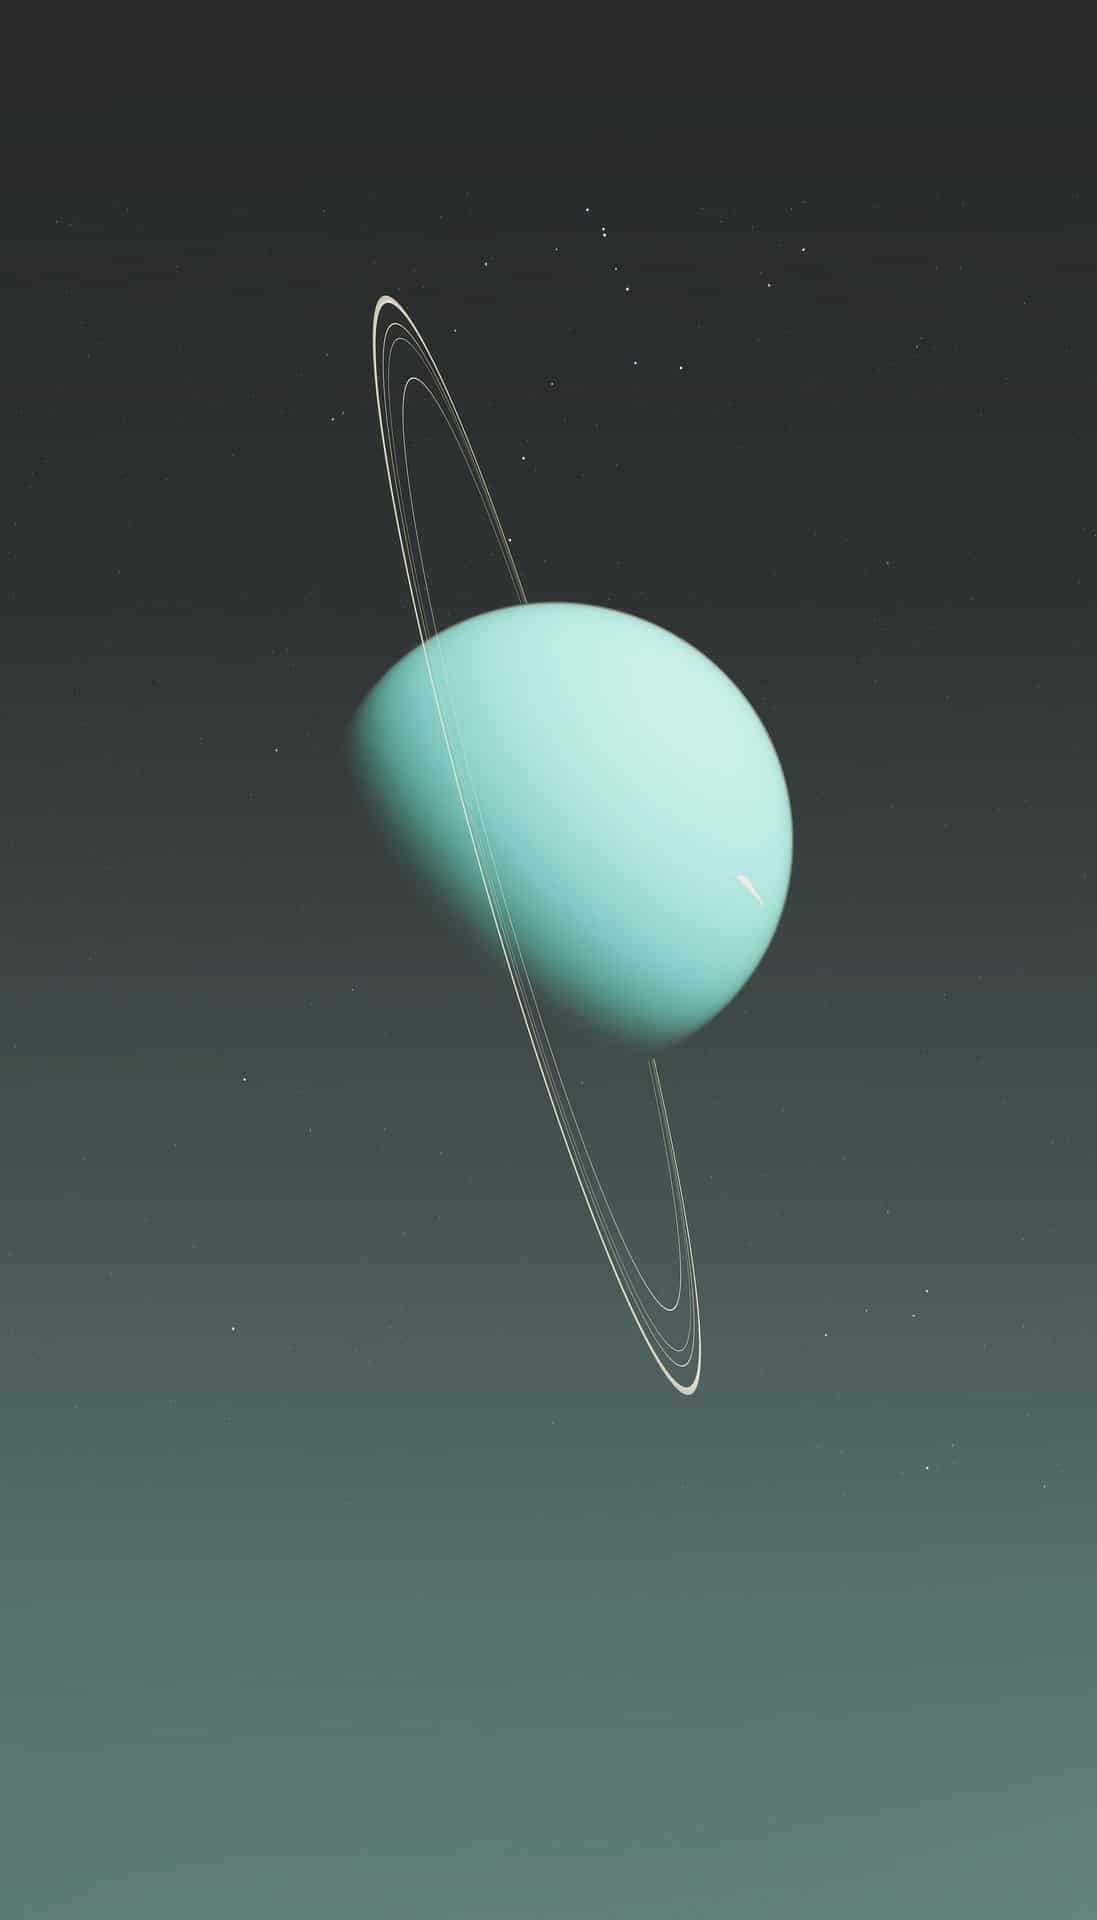 La Chine veut sonder Uranus et Jupiter avec une seule fusée